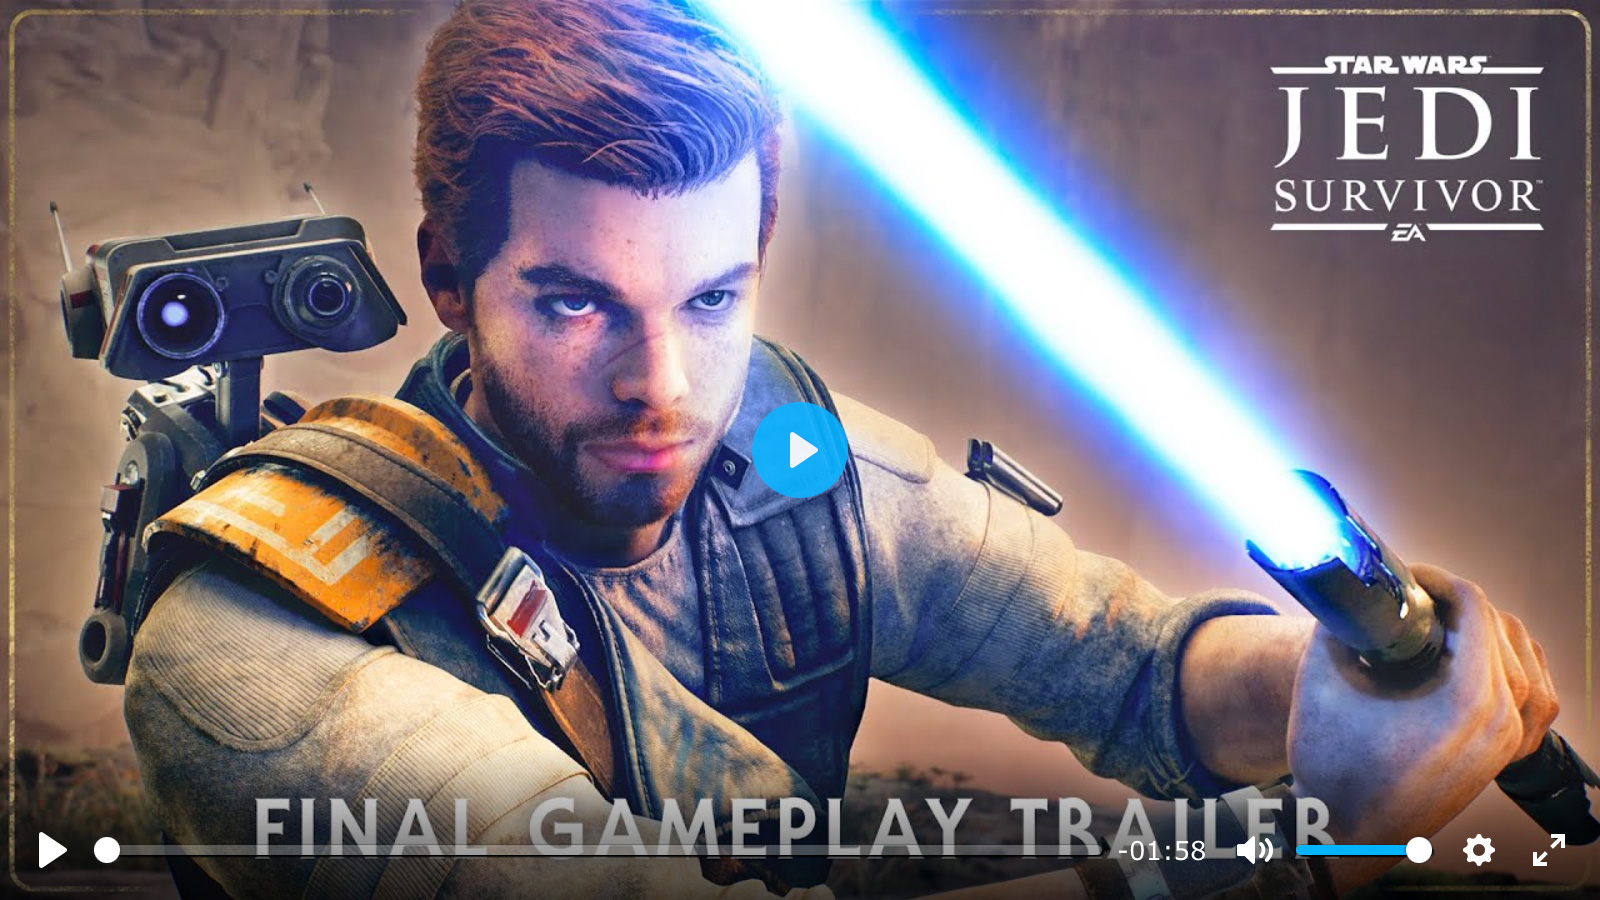 Final Gameplay Trailer - Star Wars Jedi: Survivor